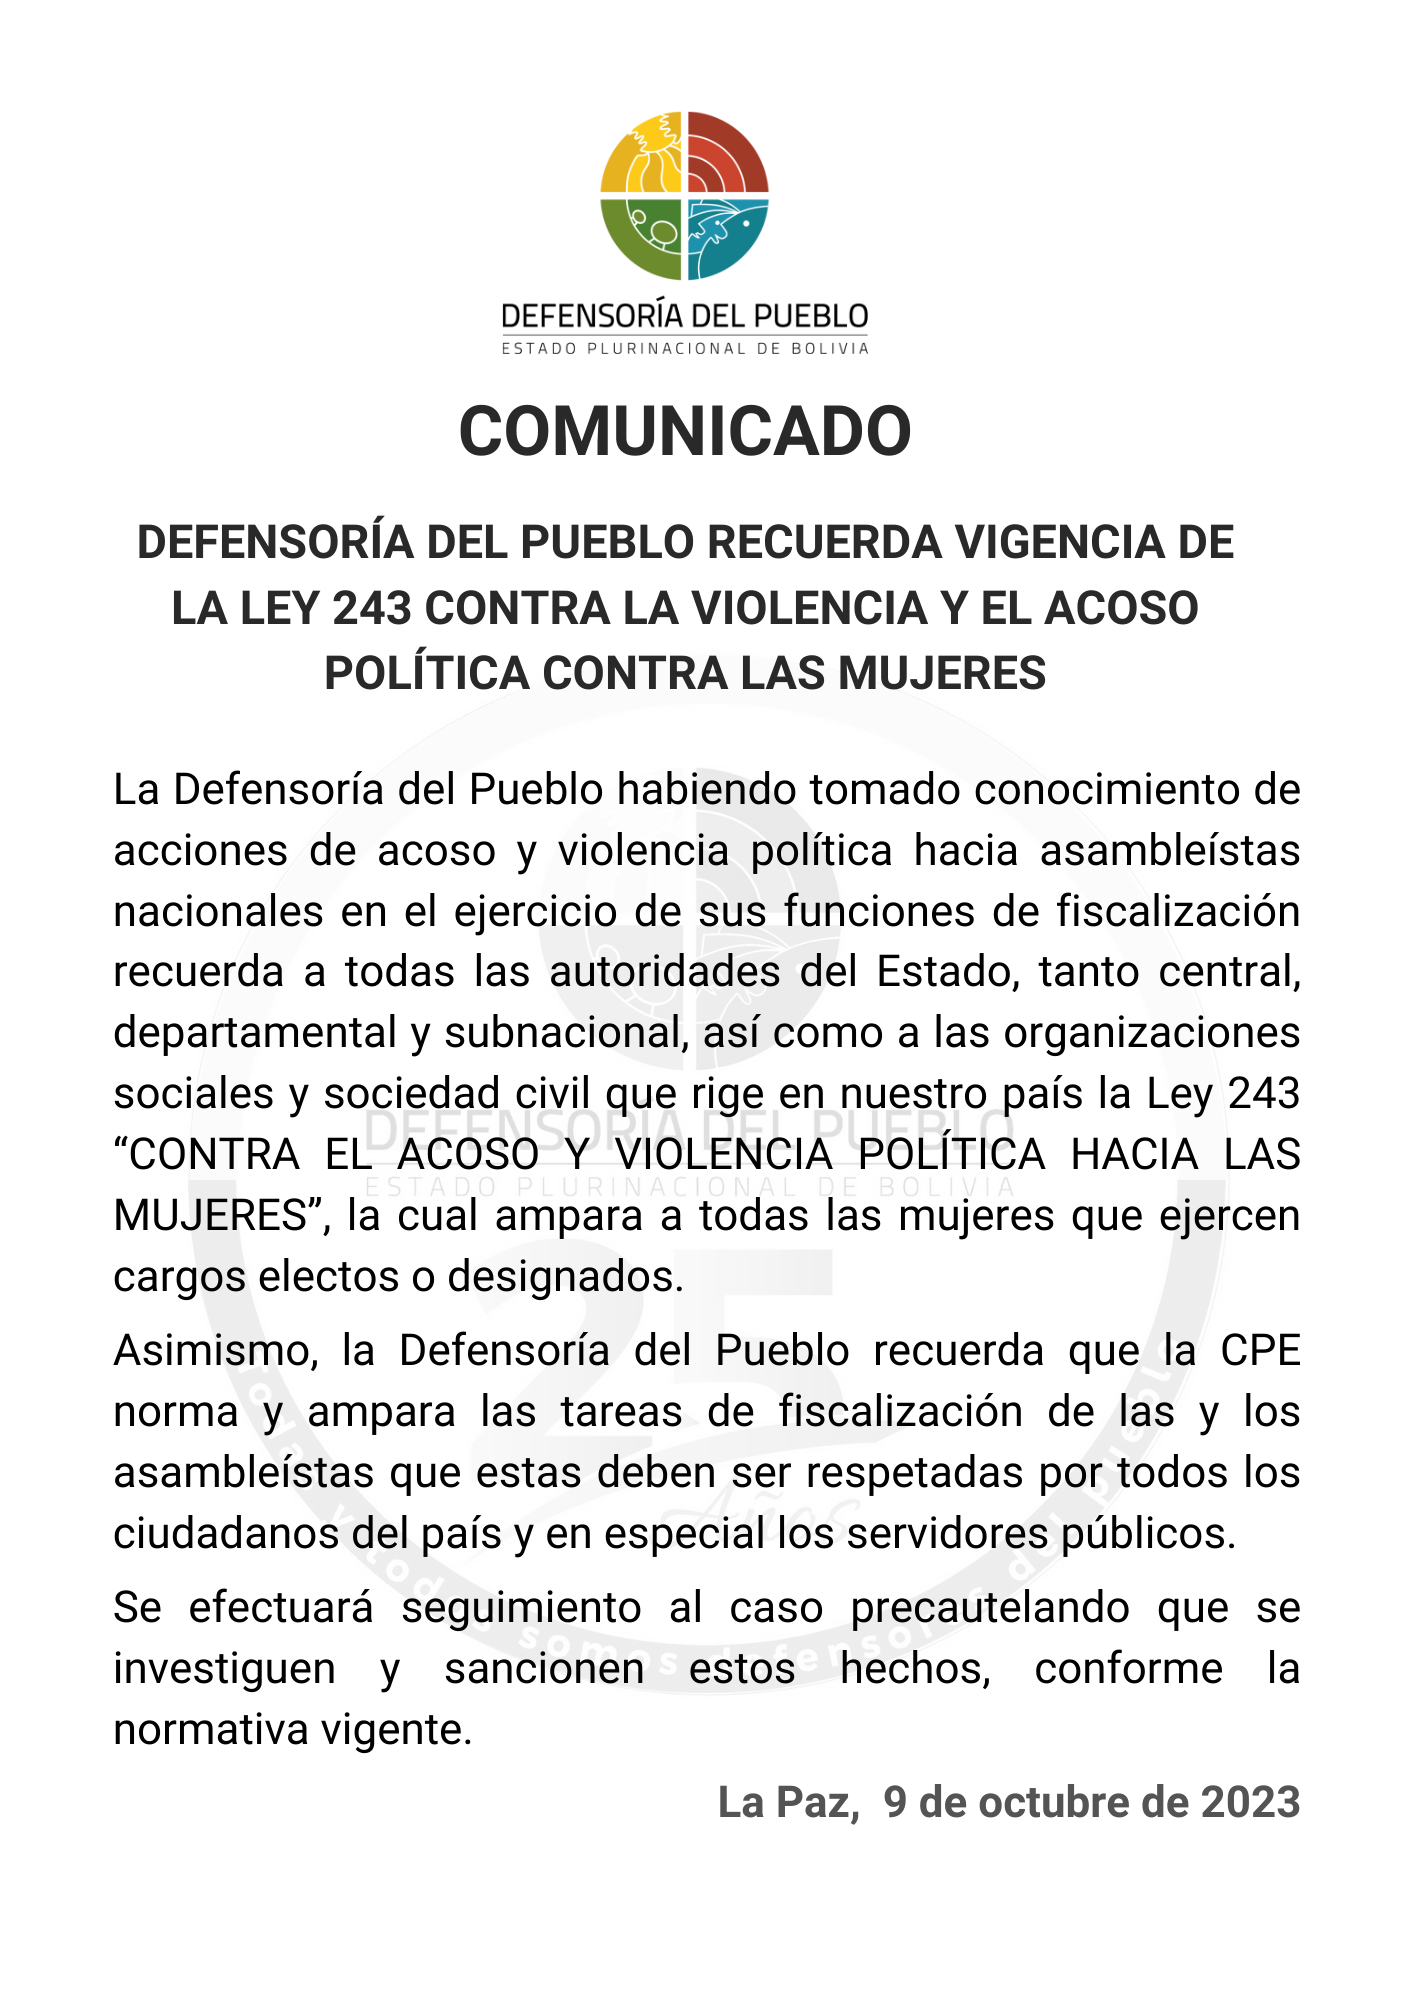 DEFENSORÍA DEL PUEBLO RECUERDA VIGENCIA DE LA LEY 243 CONTRA LA VIOLENCIA Y EL ACOSO POLÍTICA CONTRA LAS MUJERES